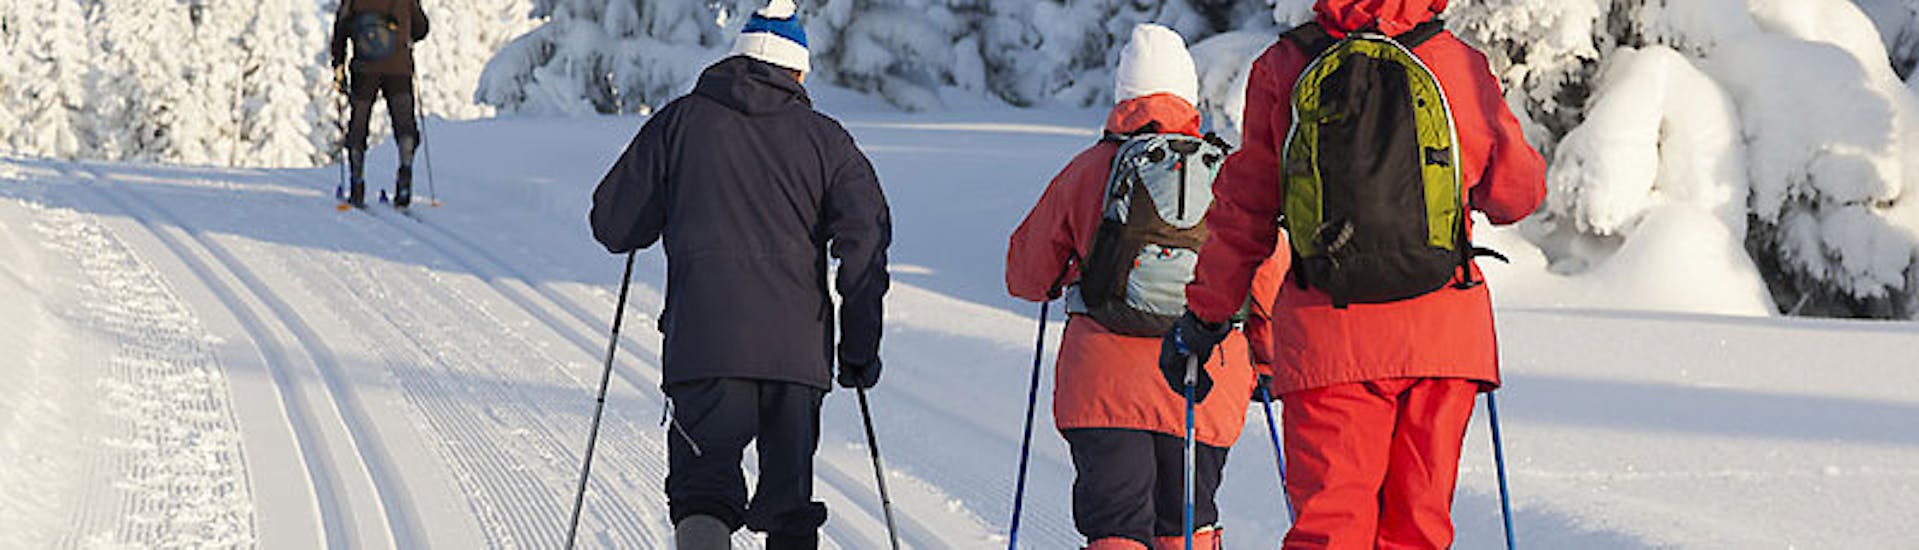 Clases de esquí de fondo a partir de 4 años para todos los niveles.